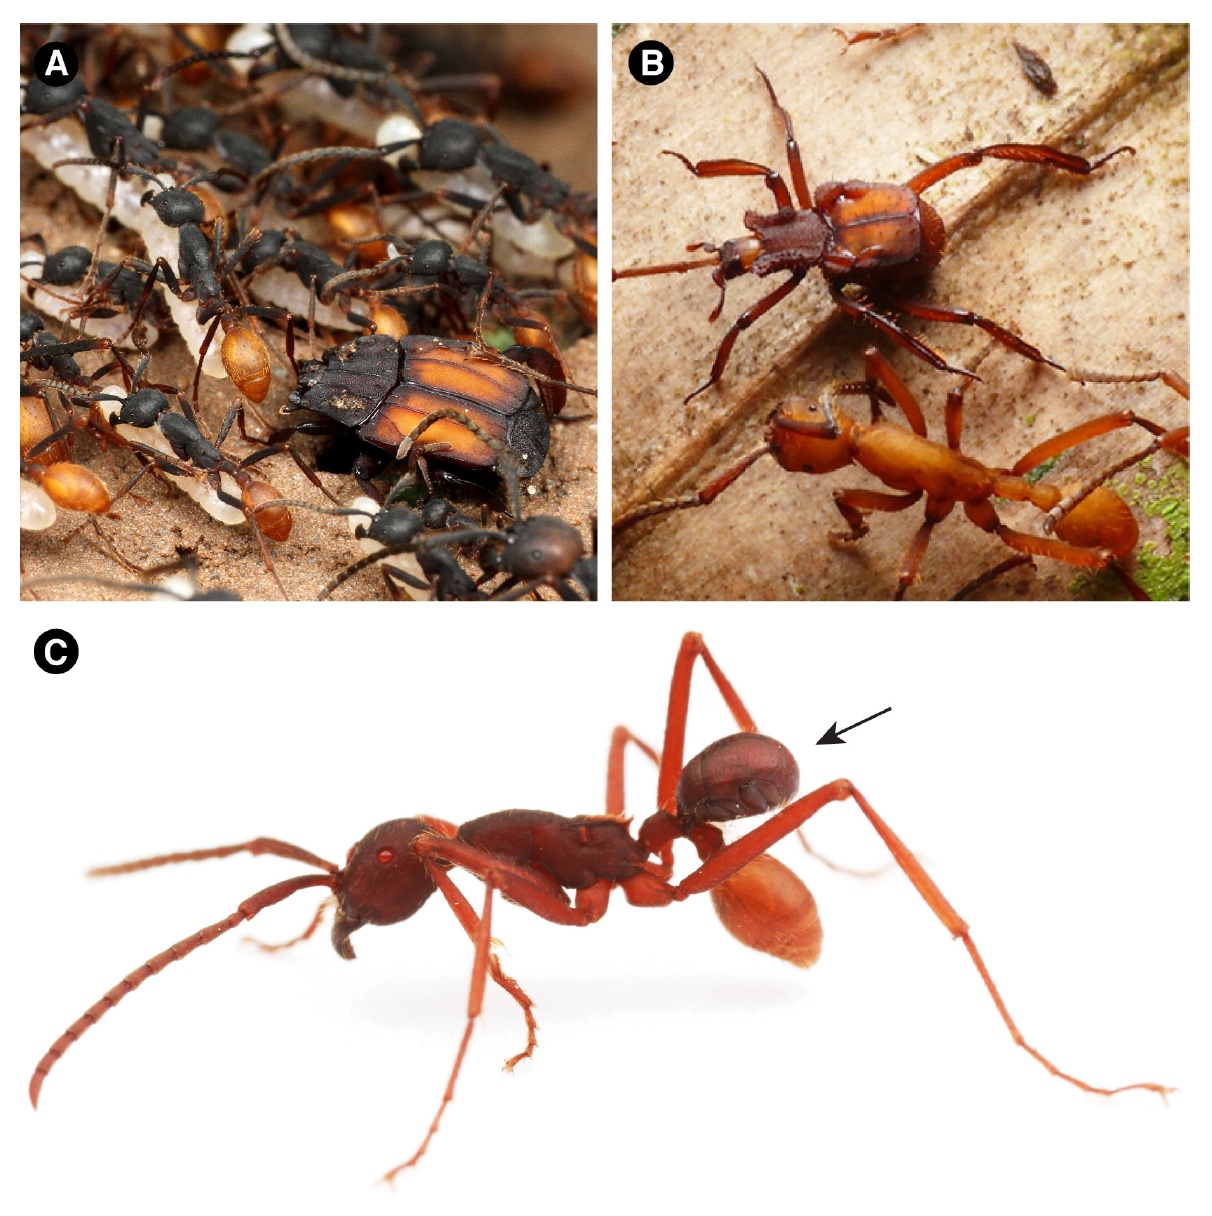 Карапузик верхом на муравье: 100 миллионов лет мирмекофилии - 11